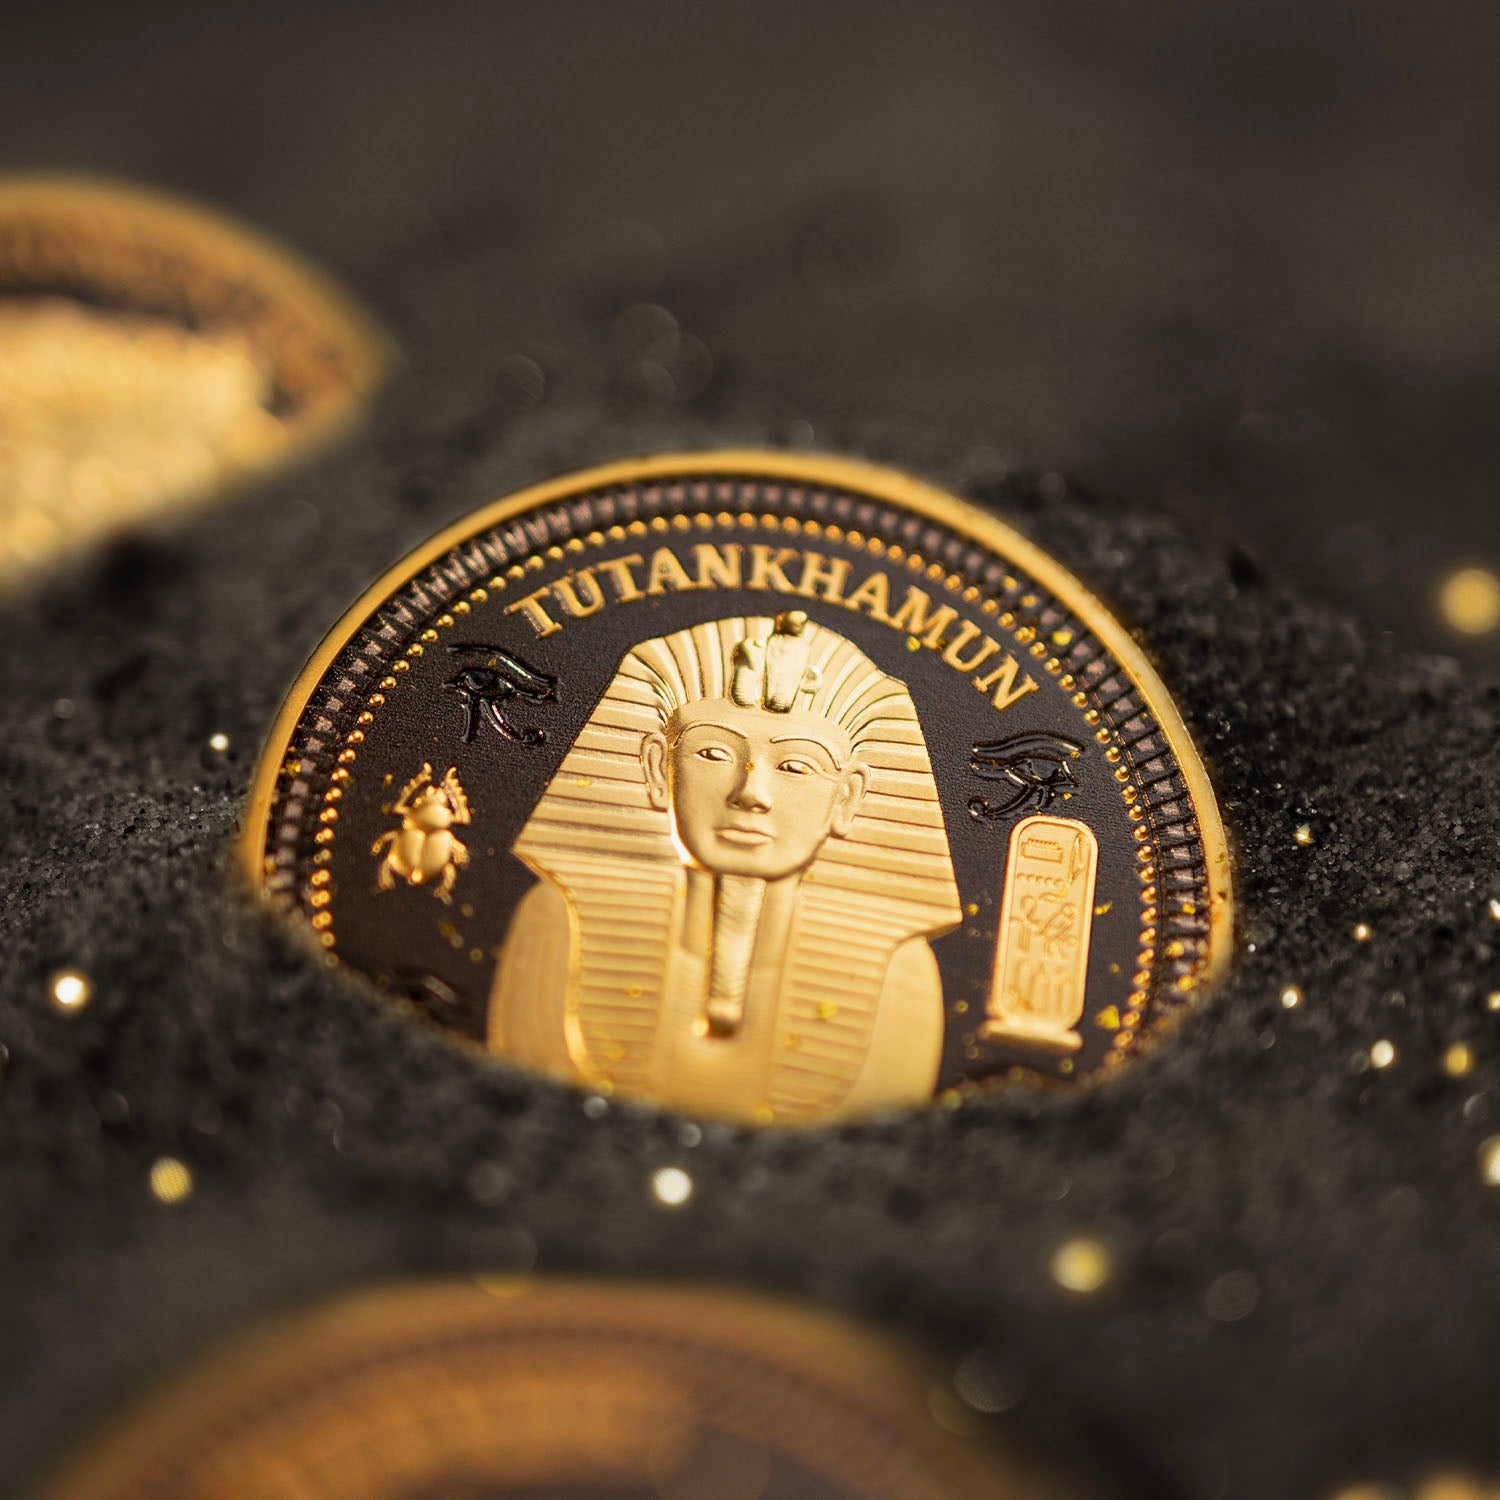 古代エジプトの謎 アヌビス 5 ドル コイン